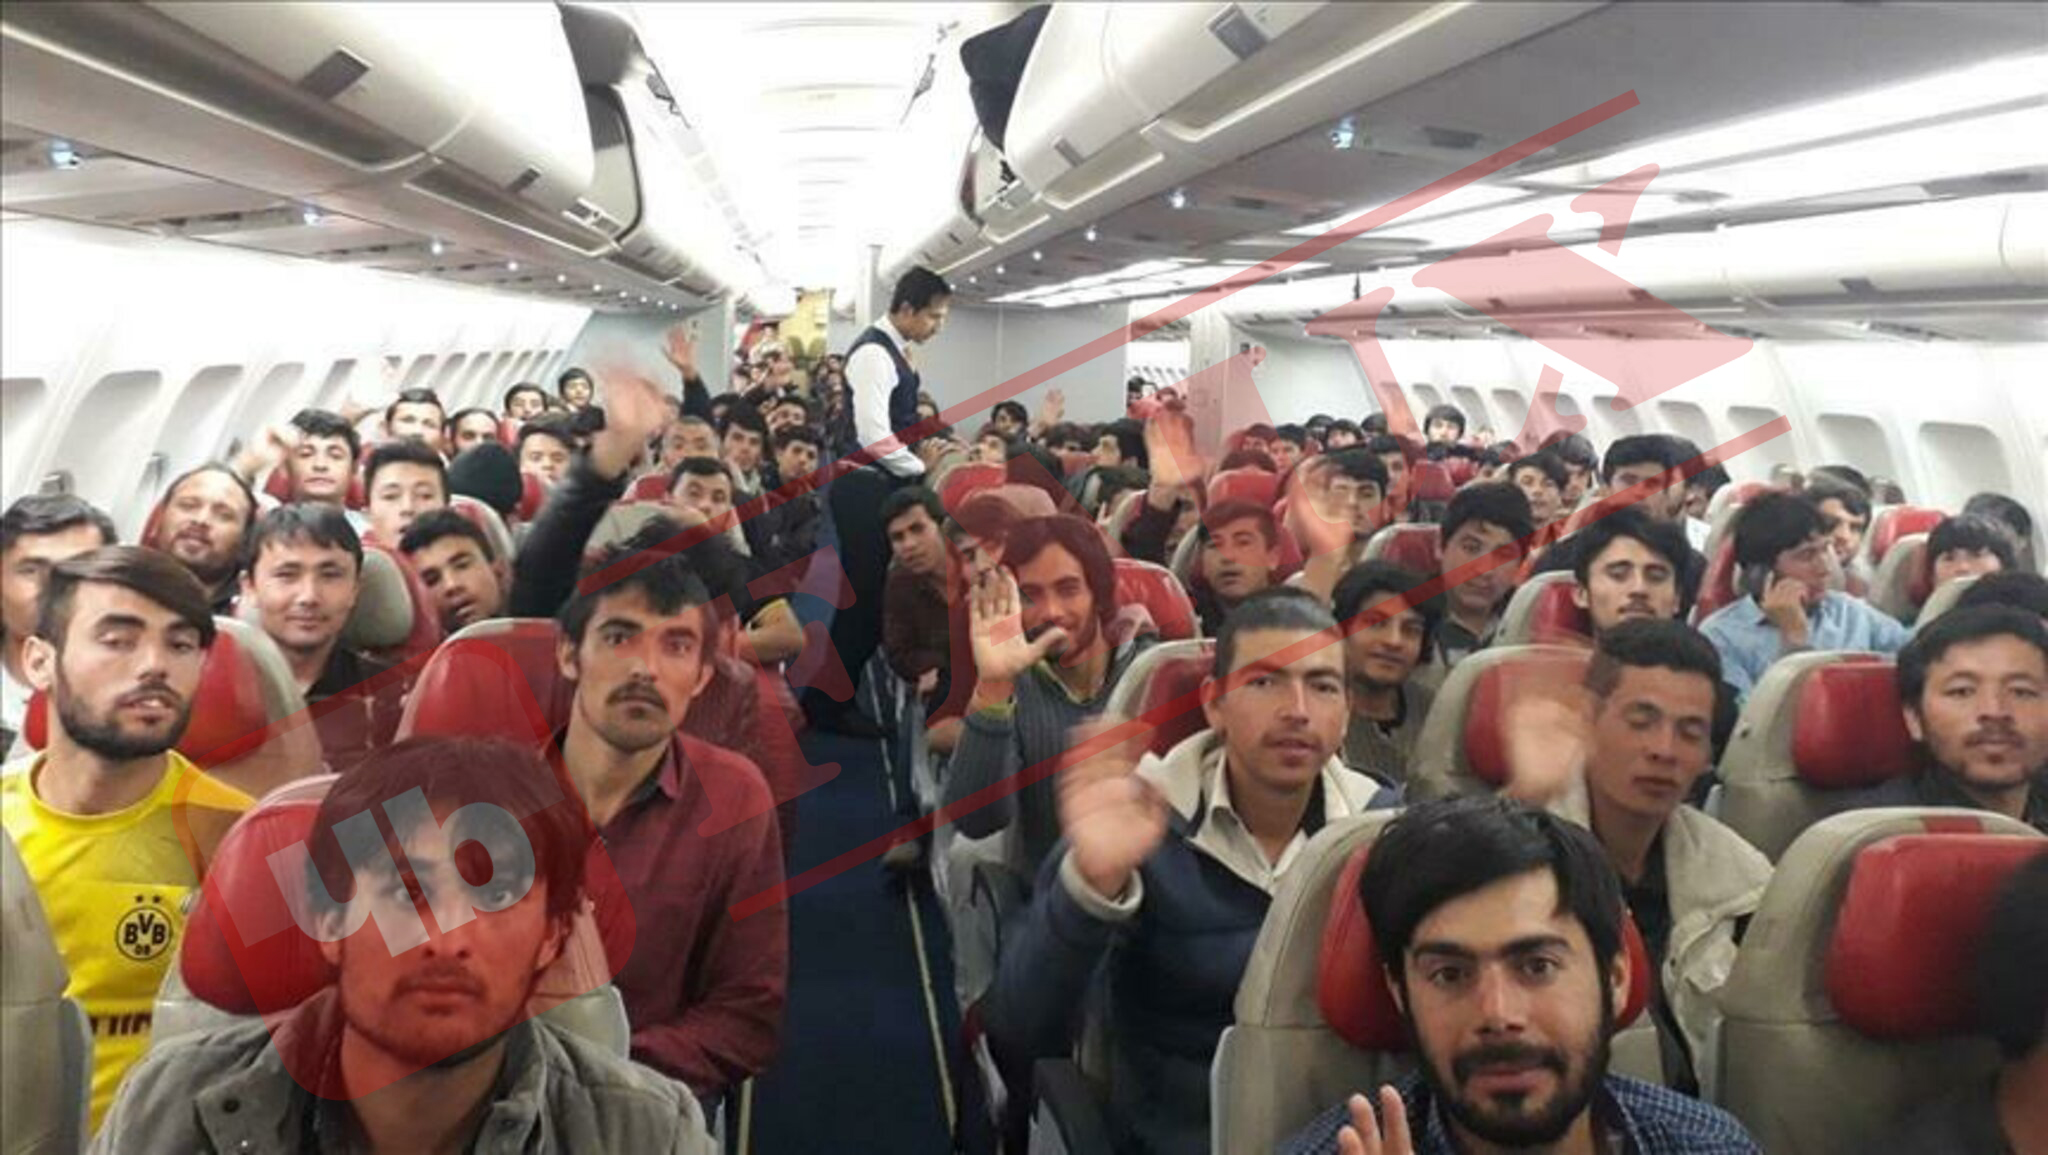 Non, cette photo ne montre pas l'arrivée d'hommes Afghans vers la France